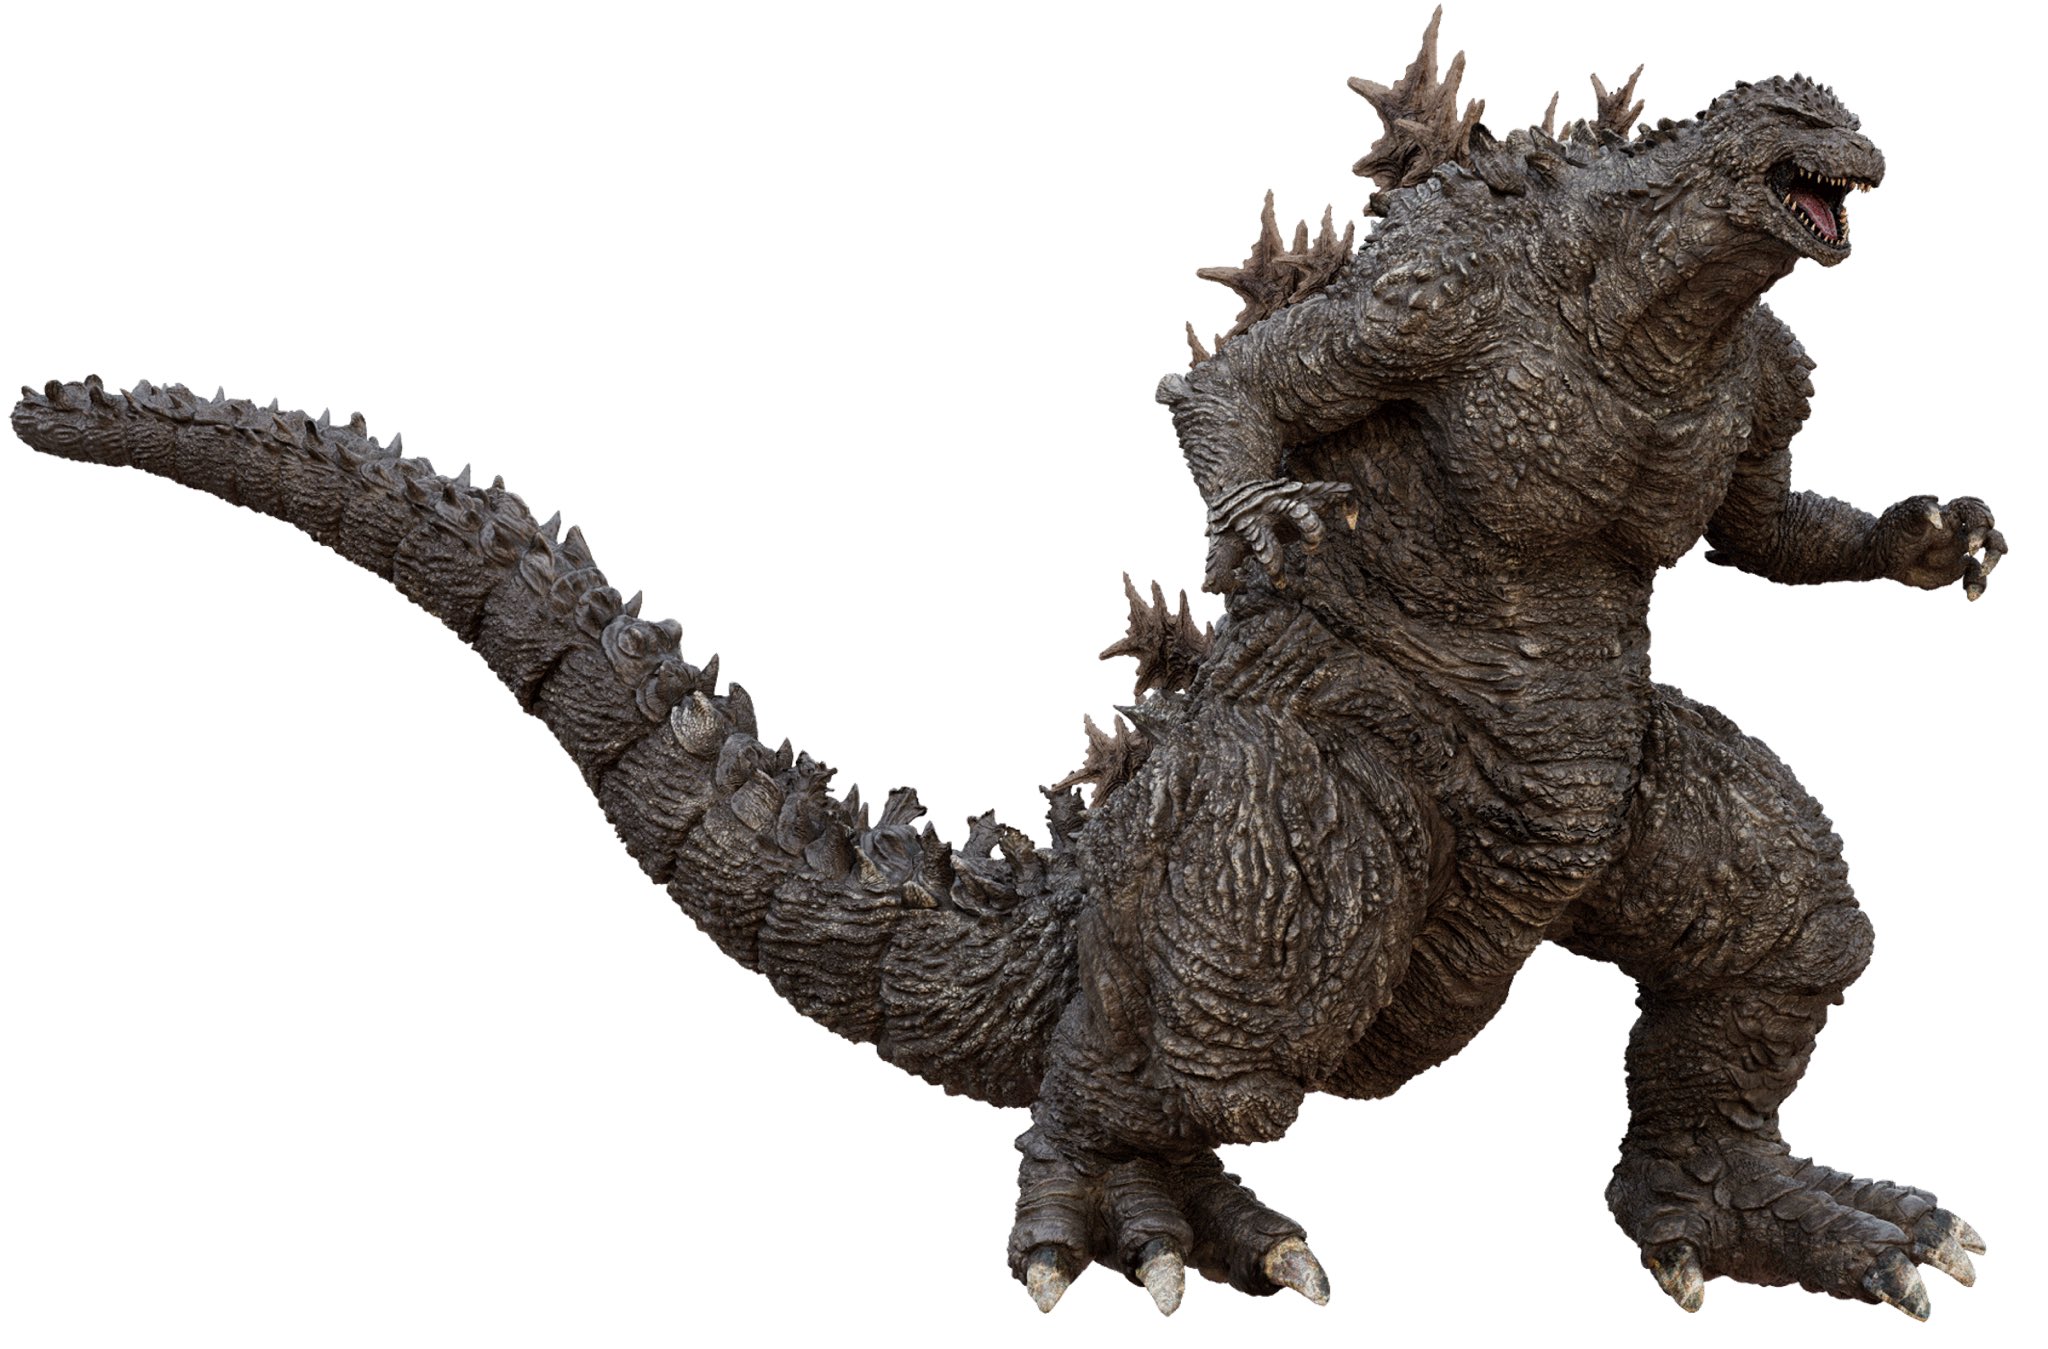 Godzilla Ultima: Concept Trailer ] 